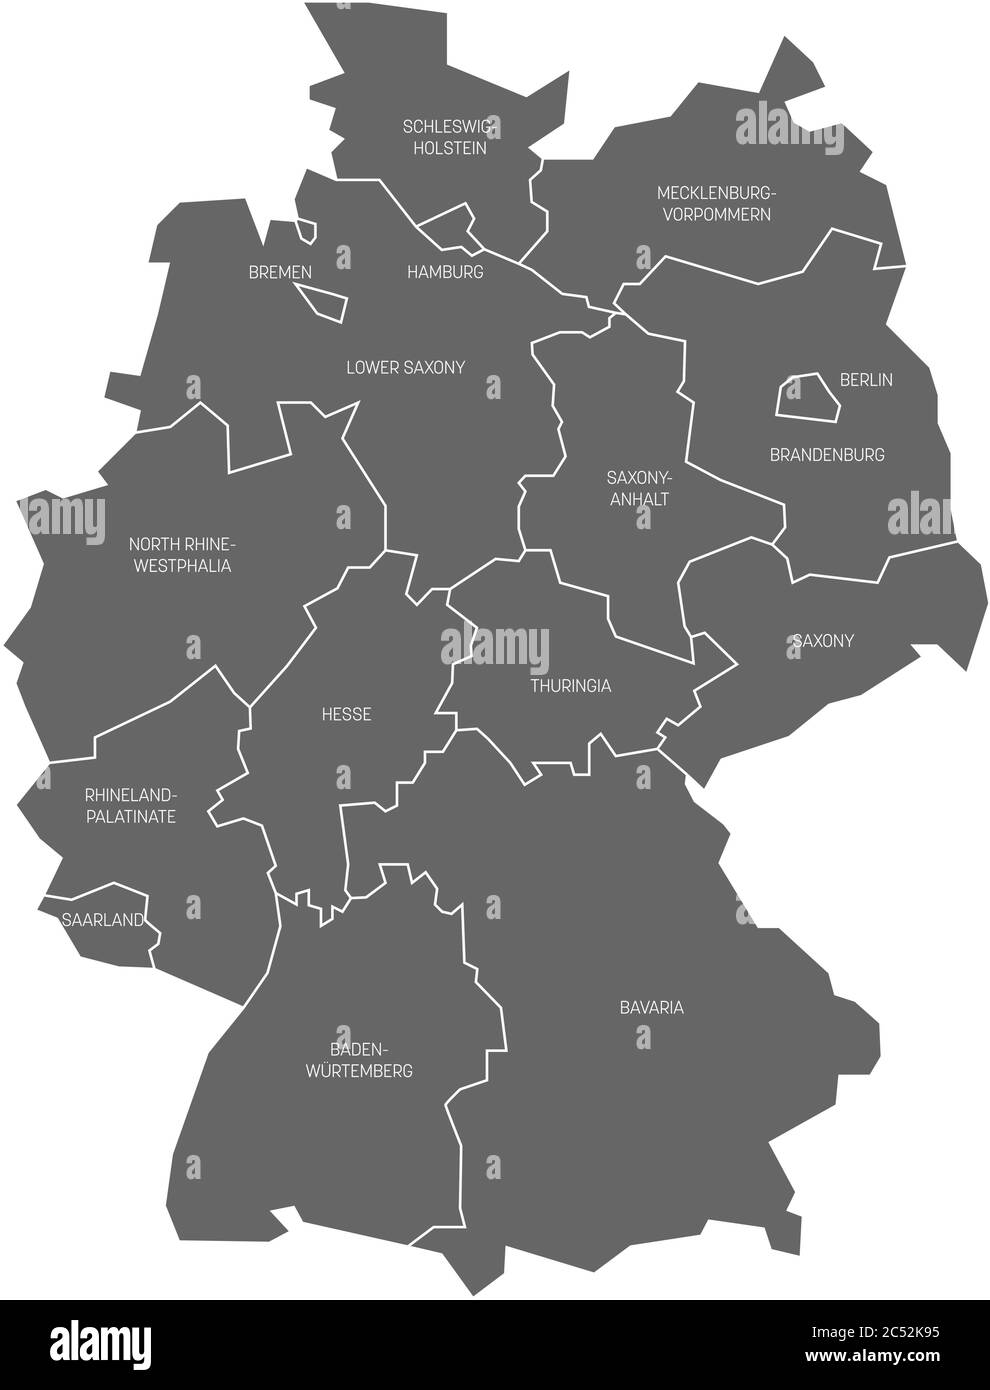 Karte von Deutschland aufgeteilt auf 13 Bundesländer und 3 Stadtstaaten - Berlin, Bremen und Hamburg, Europa. Einfache flache graue Vektorkarte mit weißen Beschriftungen. Stock Vektor